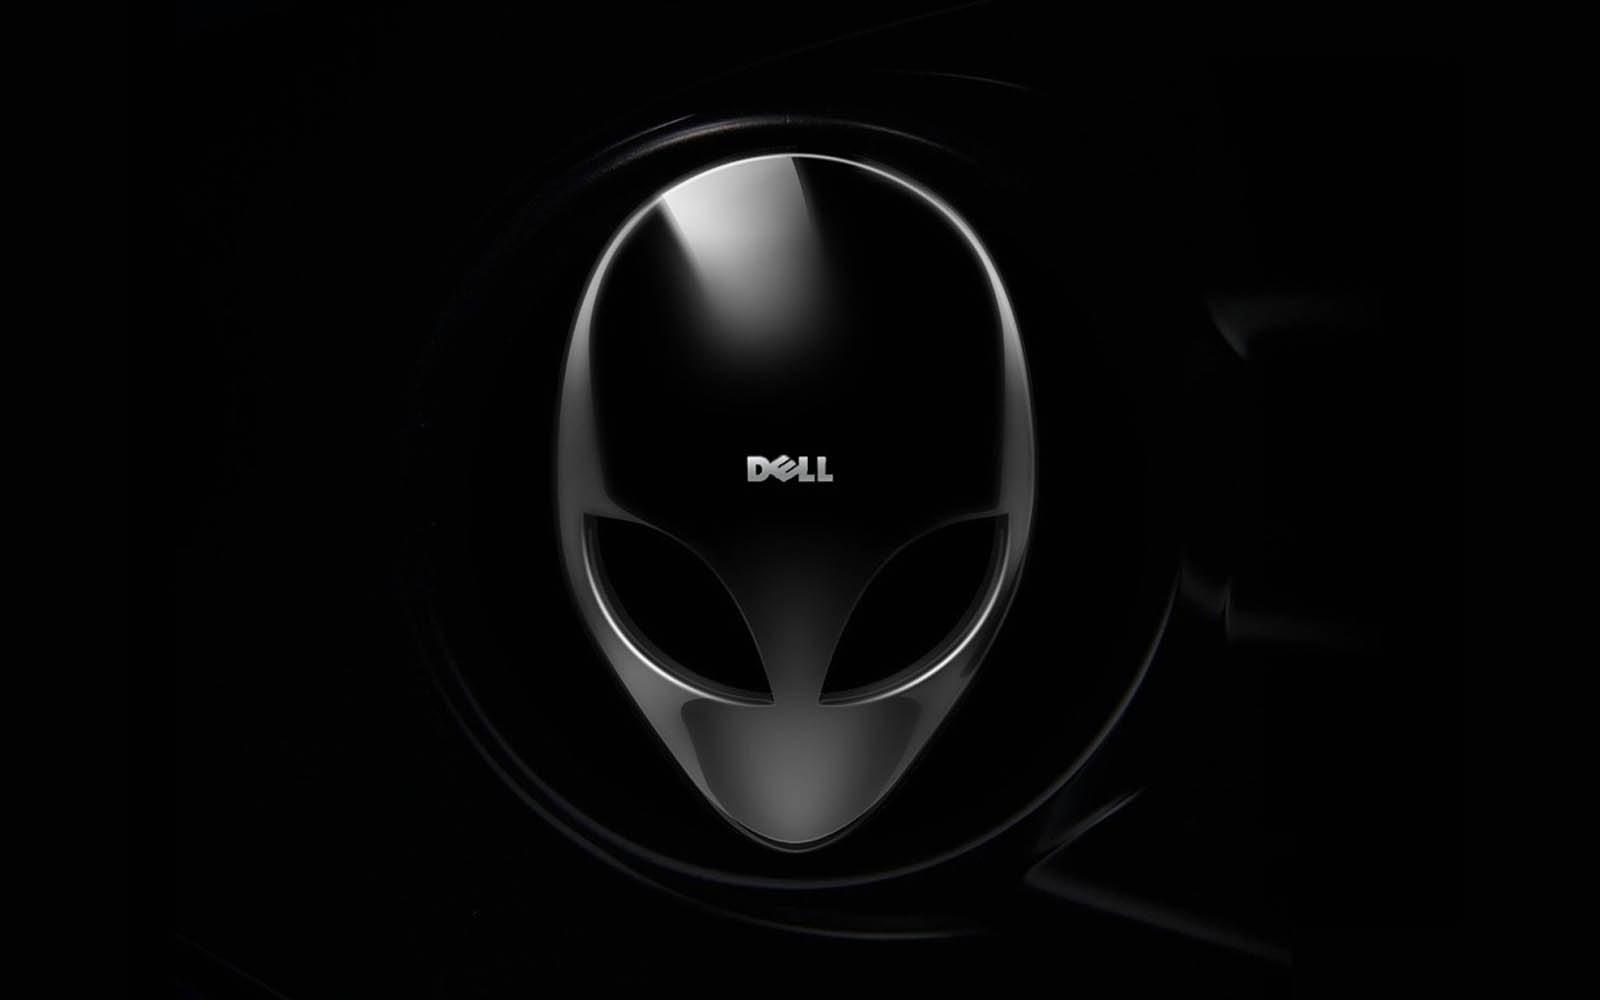 Dell 1 Dell Way Wallpaper | PicsWallpaper.com